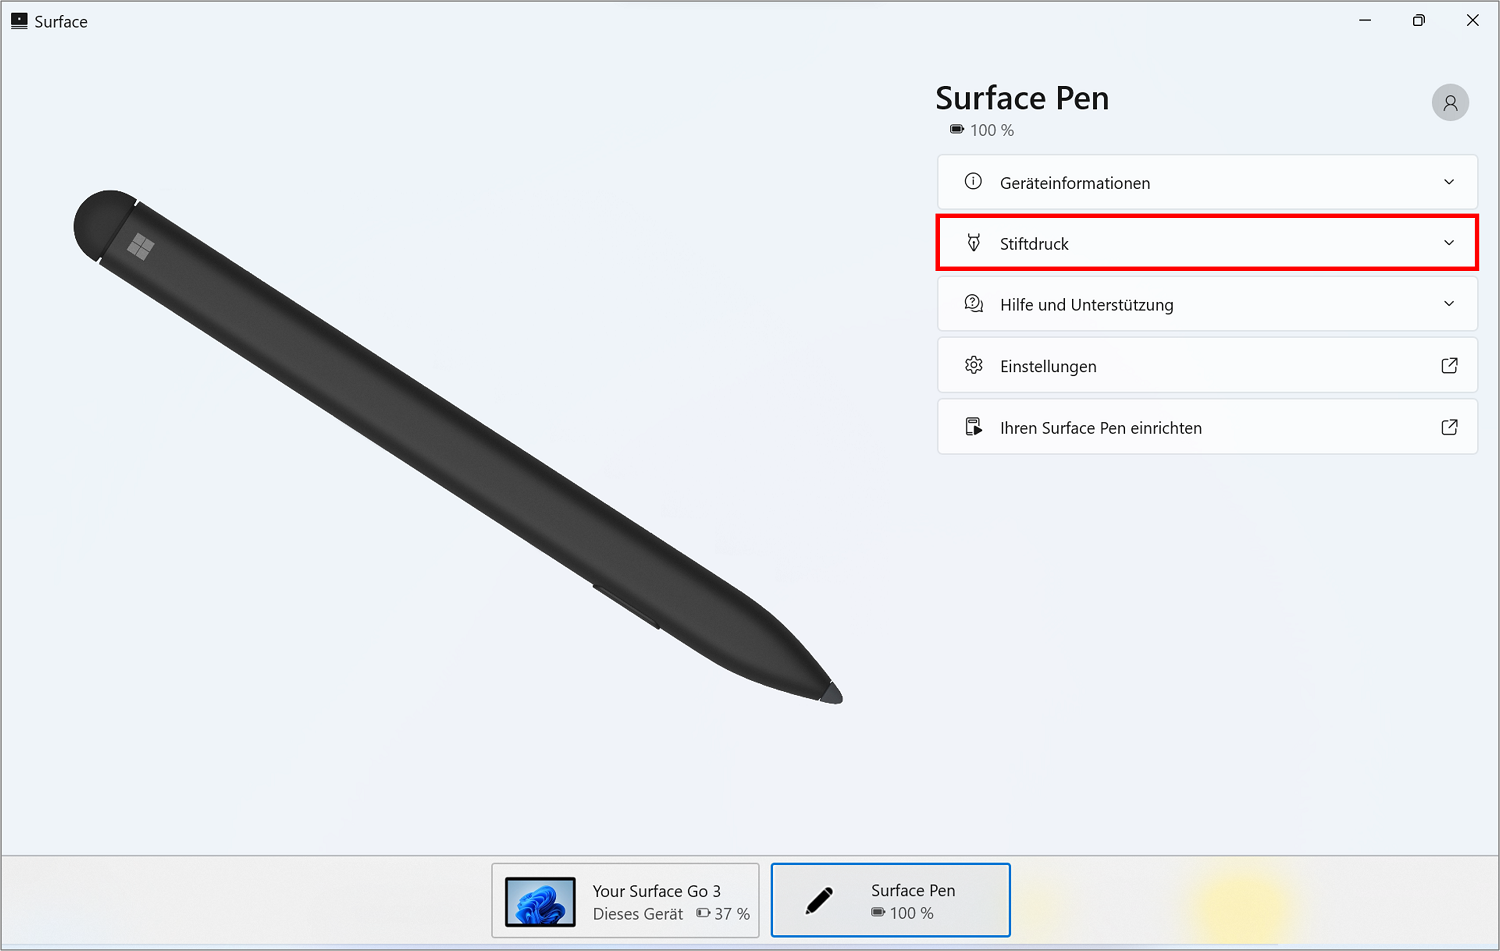 In der App von Microsoft können Sie den Stiftdruck des Surface Pen ändern.